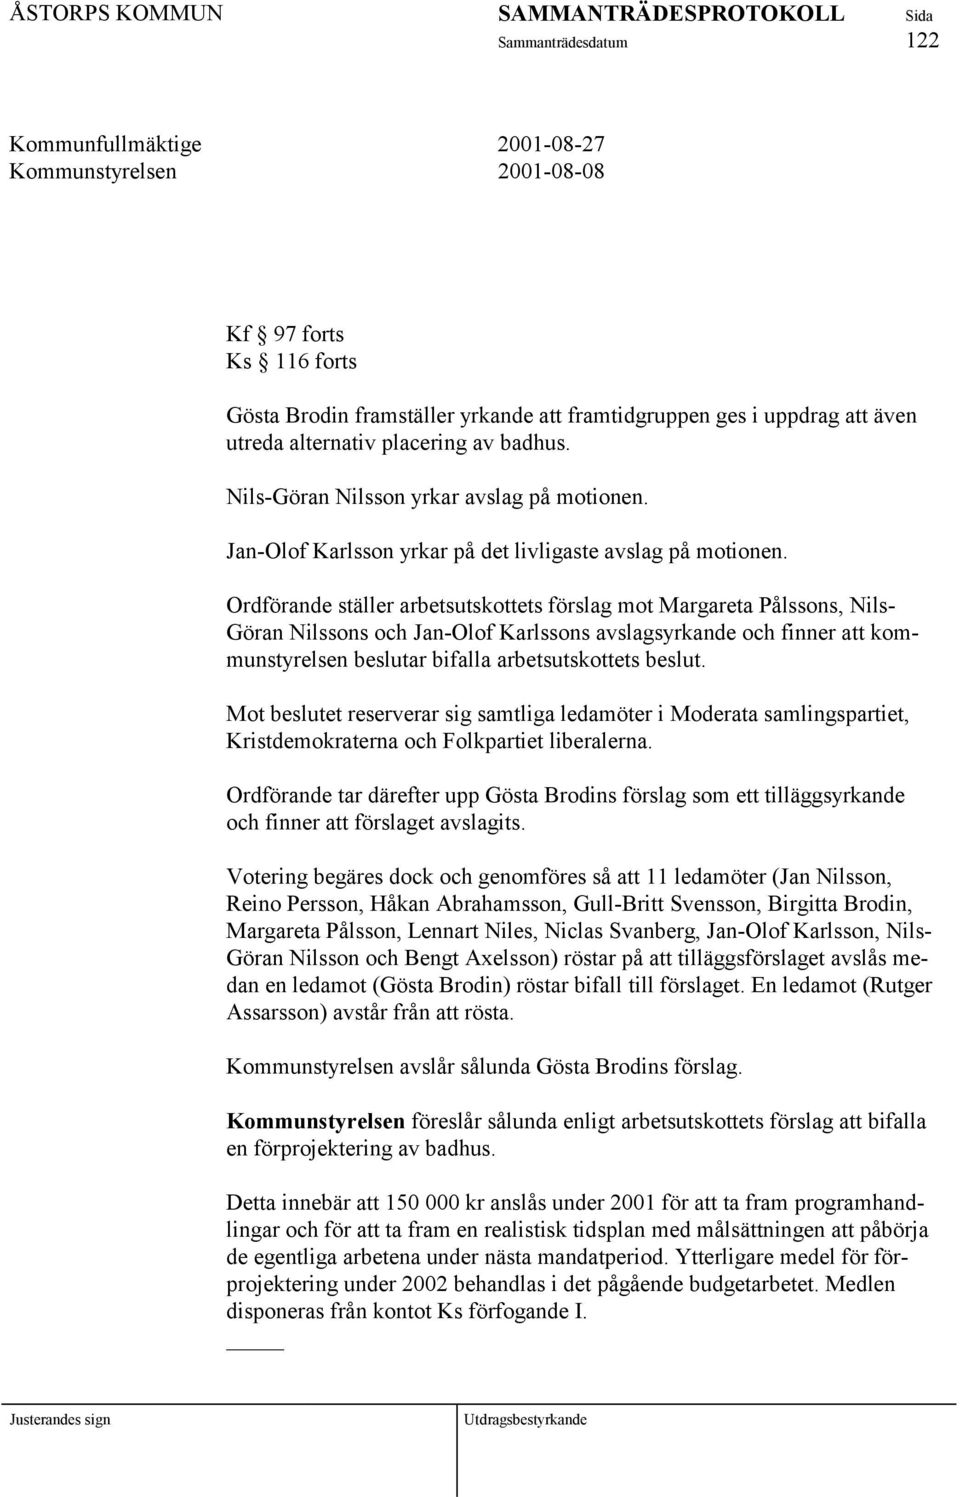 Ordförande ställer arbetsutskottets förslag mot Margareta Pålssons, Nils- Göran Nilssons och Jan-Olof Karlssons avslagsyrkande och finner att kommunstyrelsen beslutar bifalla arbetsutskottets beslut.